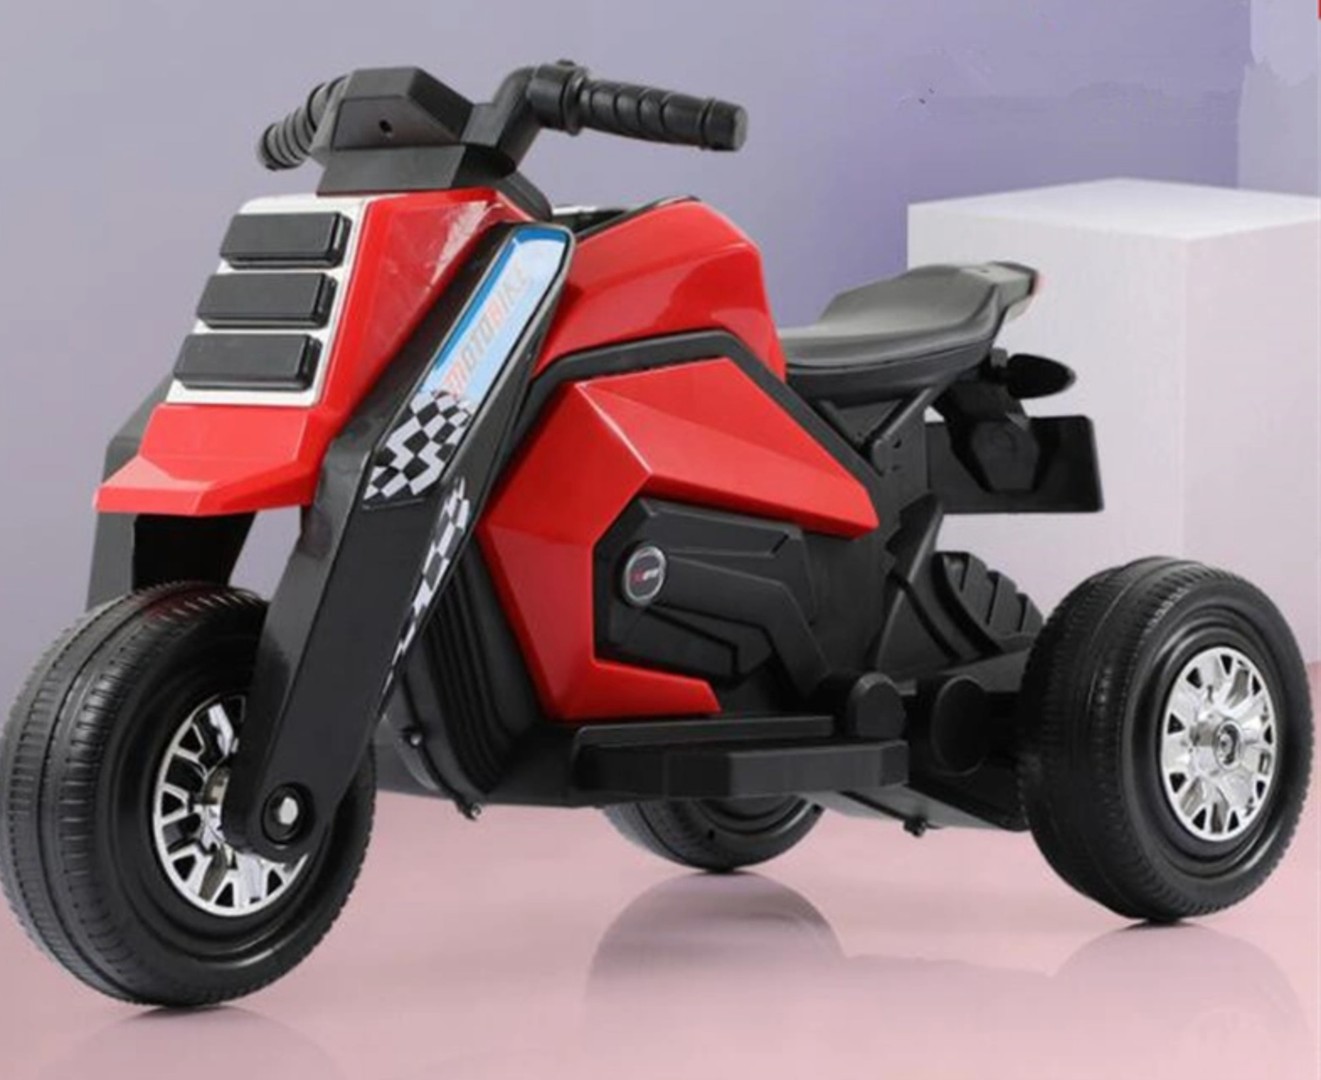 juguetes - Motorcito eléctrico para niños de tres ruedas recargable, motor moto 1